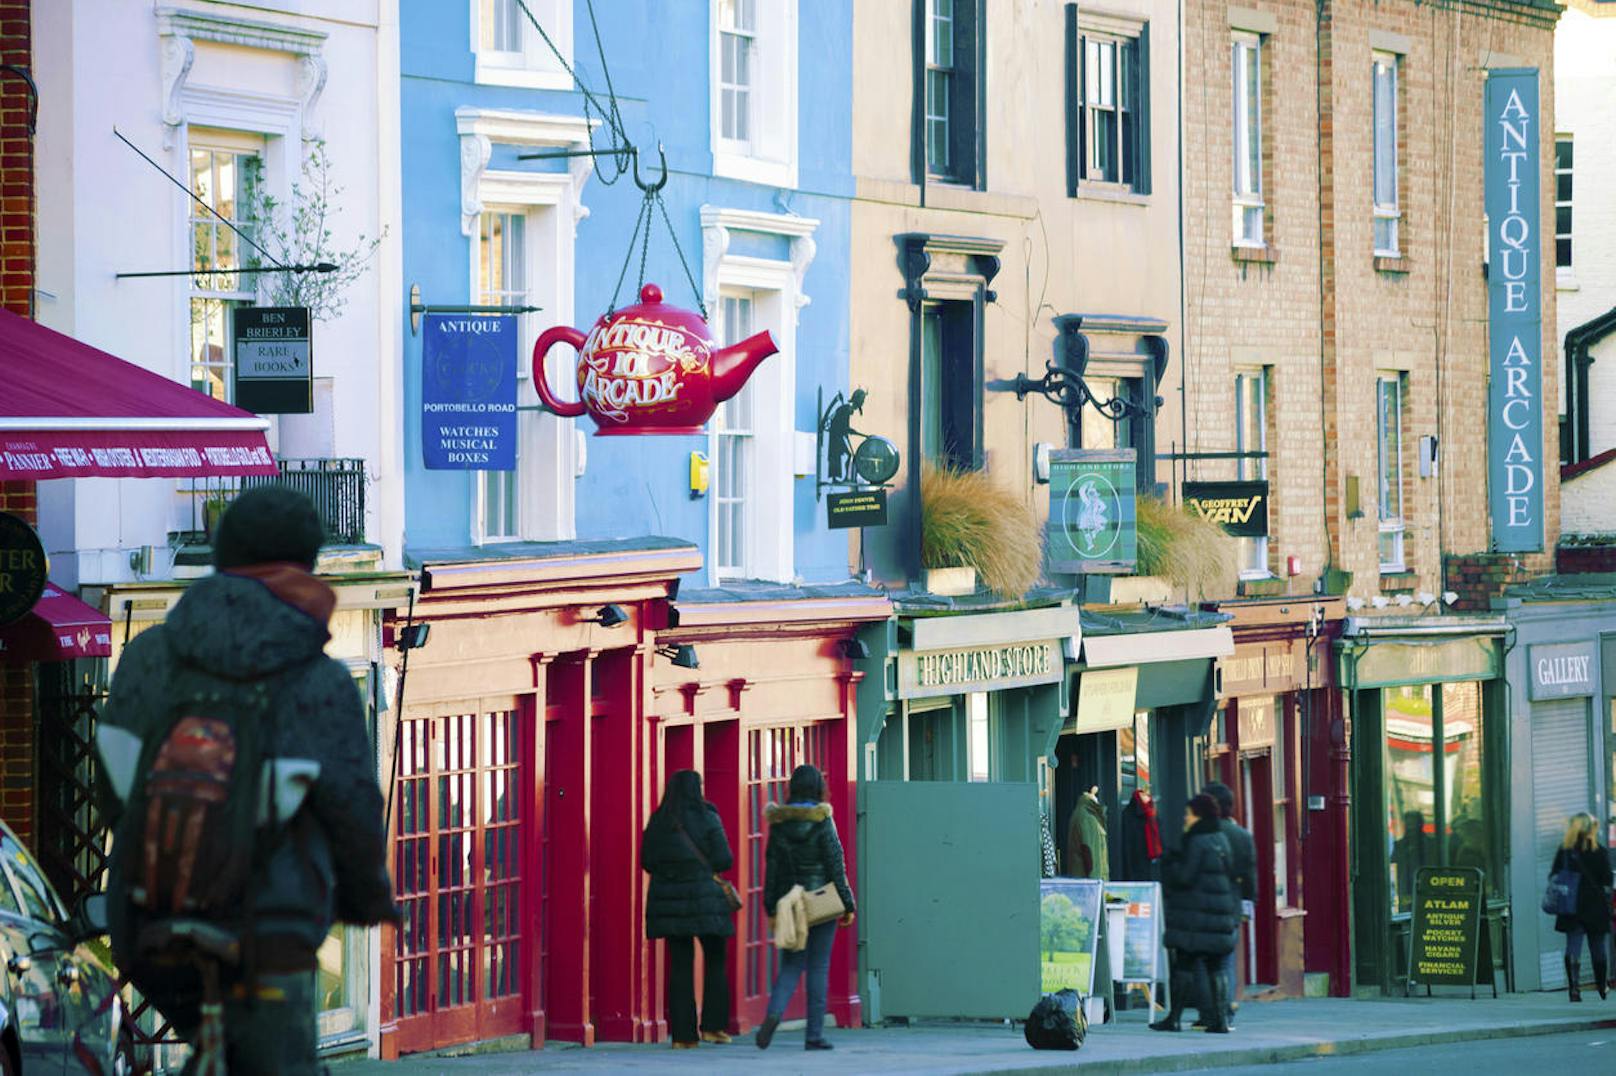 Notting Hill, Portobello Road - in dem trendigen Viertel, das manche aus dem Film "Notting Hill" mit Julia Roberts kennen, kann man gemütlich herumschlendern, kleine Boutiquen, Cafés und Antiquitätenhändler besuchen. Die U-Bahn-Station in unmittelbarer Nähe heißt "Notting Hill Gate".